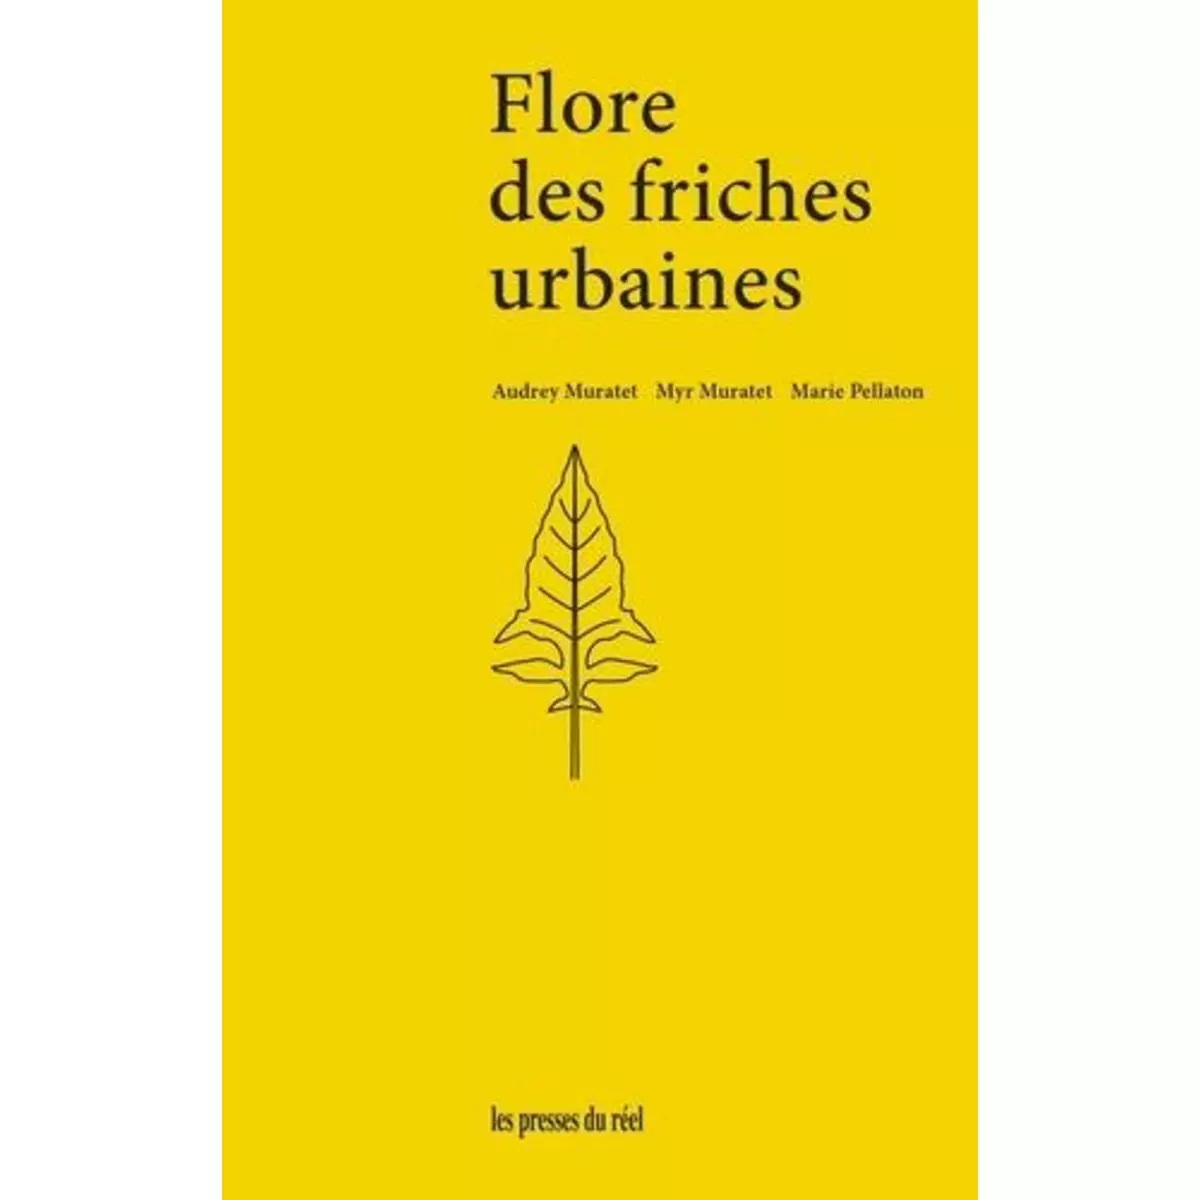  FLORE DES FRICHES URBAINES. 2E EDITION REVUE ET AUGMENTEE, Muratet Audrey